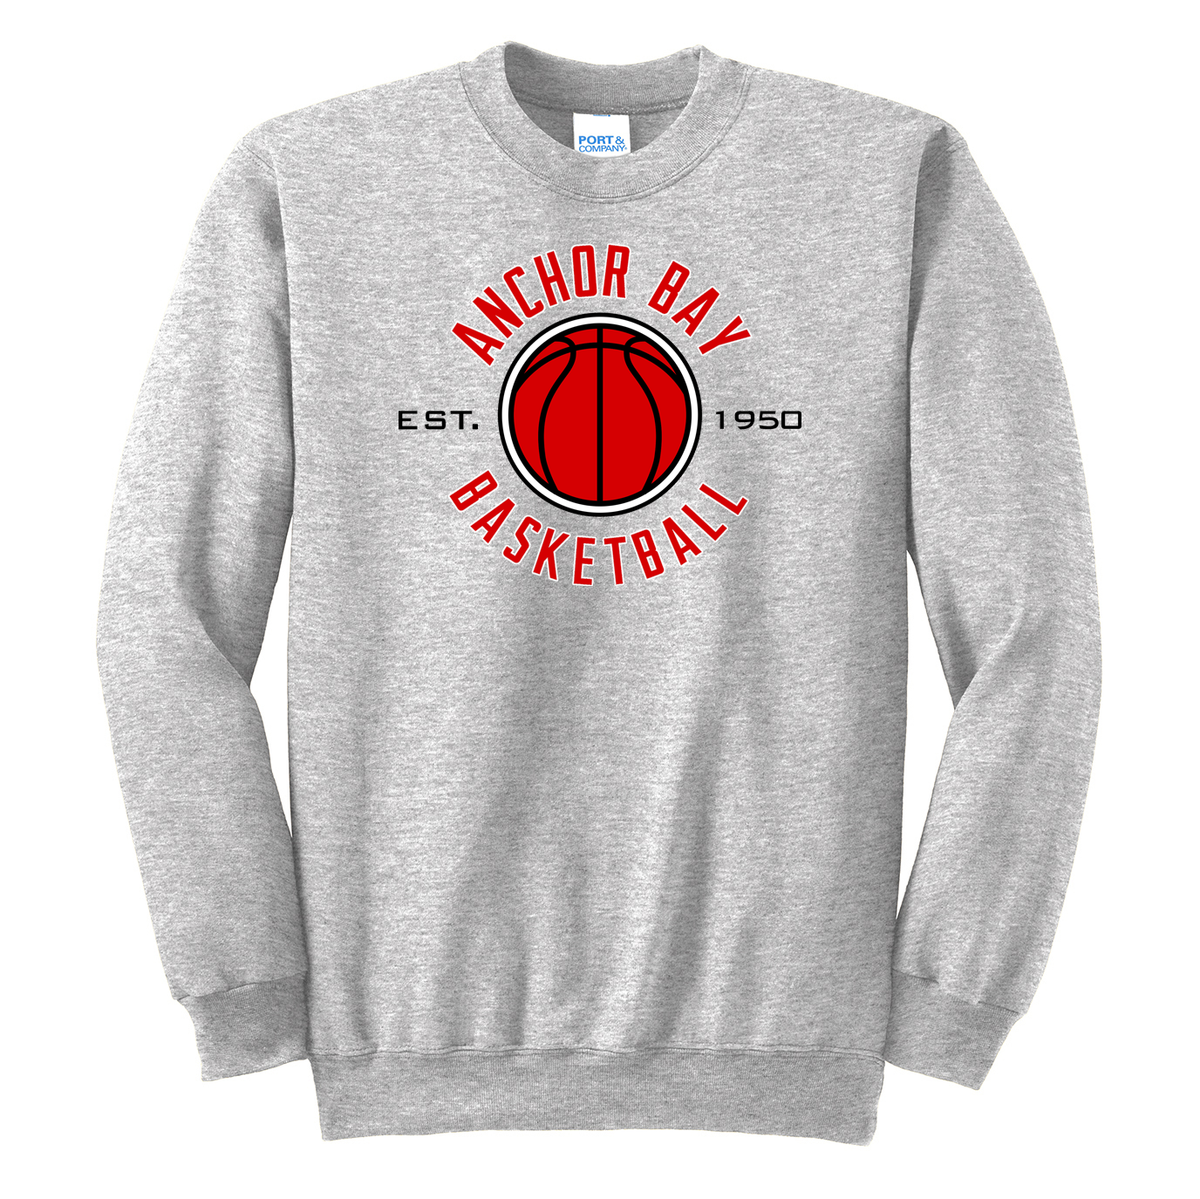 Anchor Bay Basketball Crew Neck Sweater